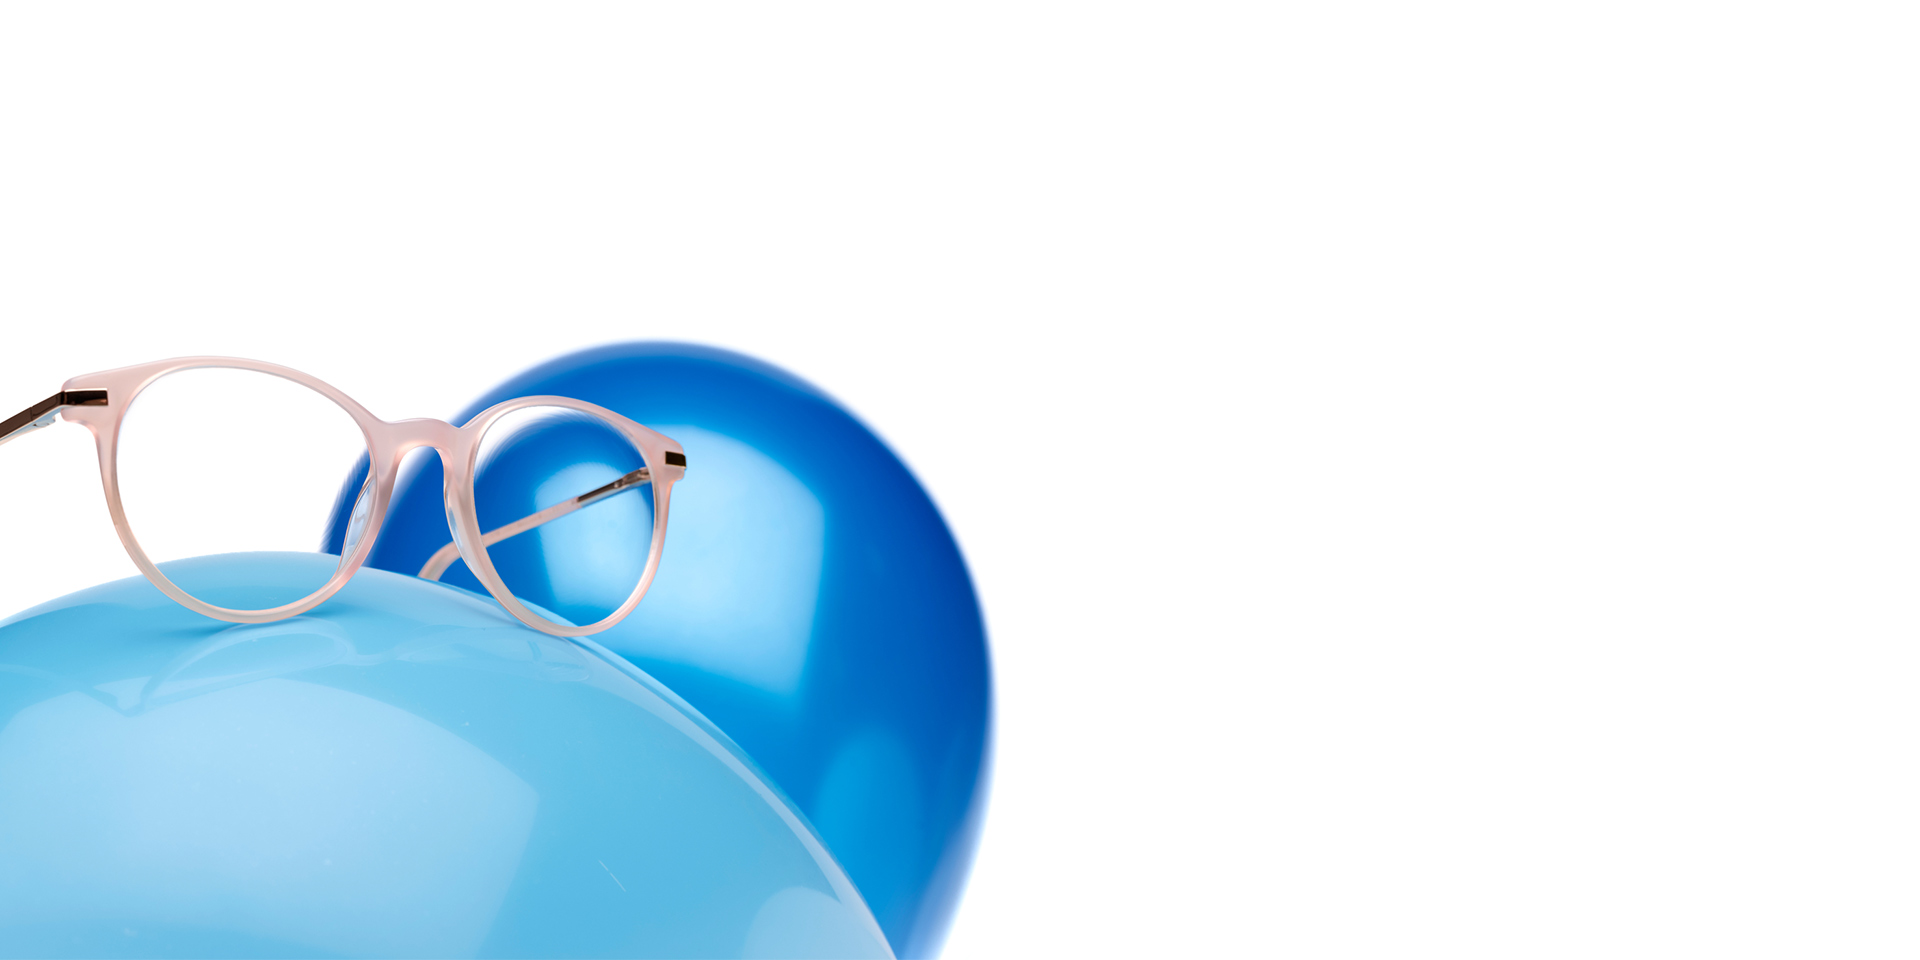 ZEISS MyoCare brillenglazen in een beige roze montuur worden getoond op een lichtblauwe ballon. Op de achtergrond staat nog een iets donkerdere blauwe ballon.